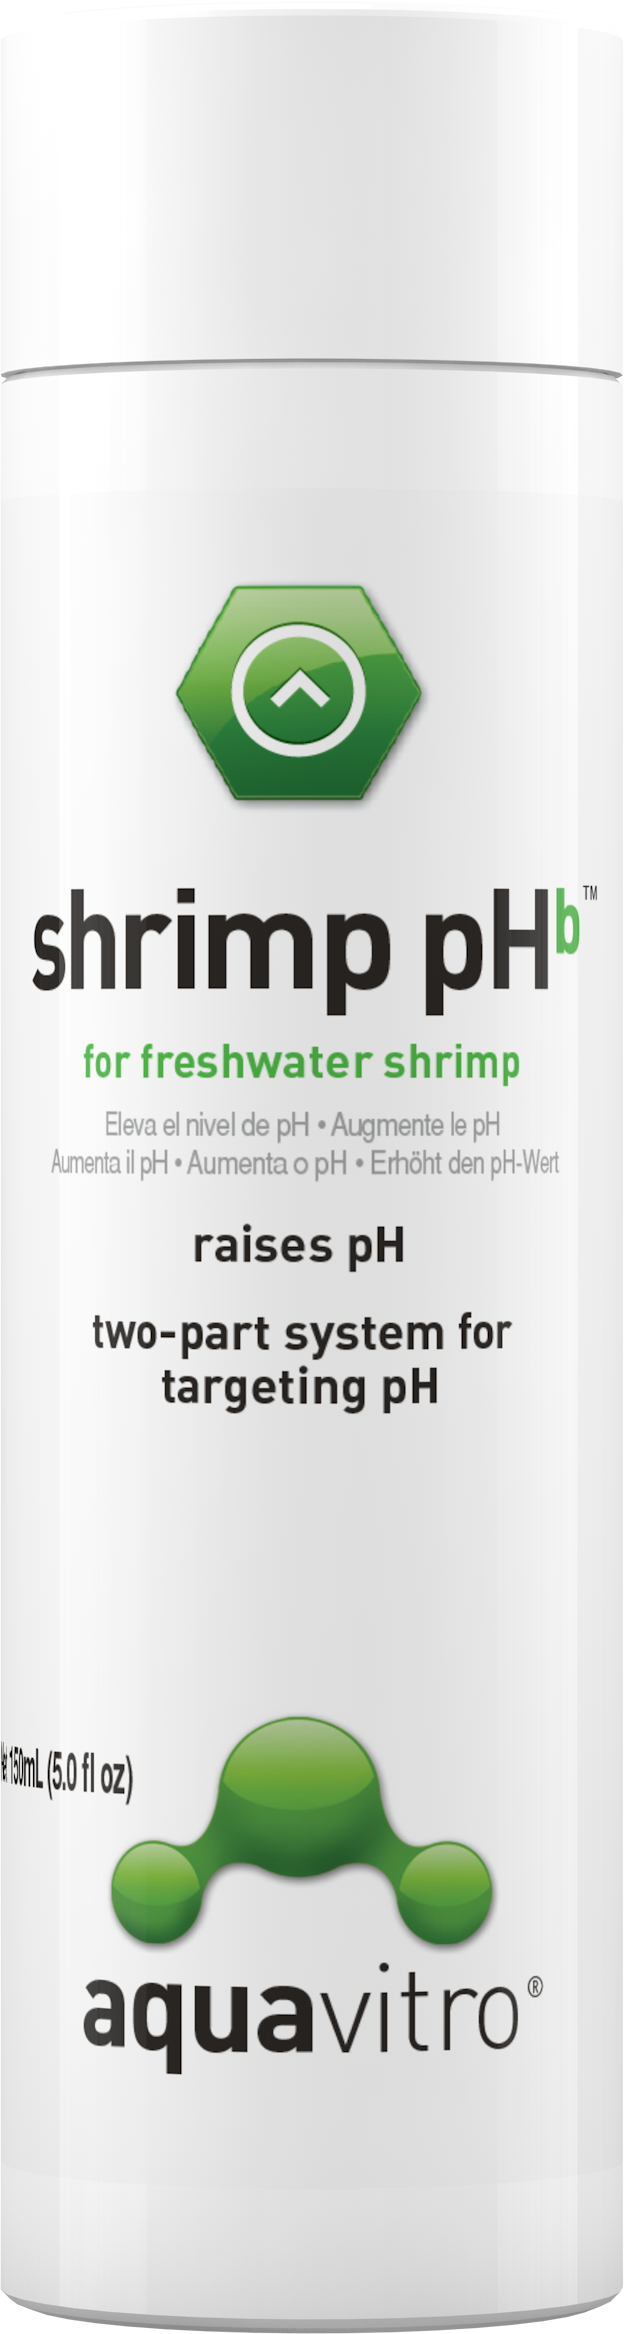 Aquavitro Shrimp pHb 150ml/350ml